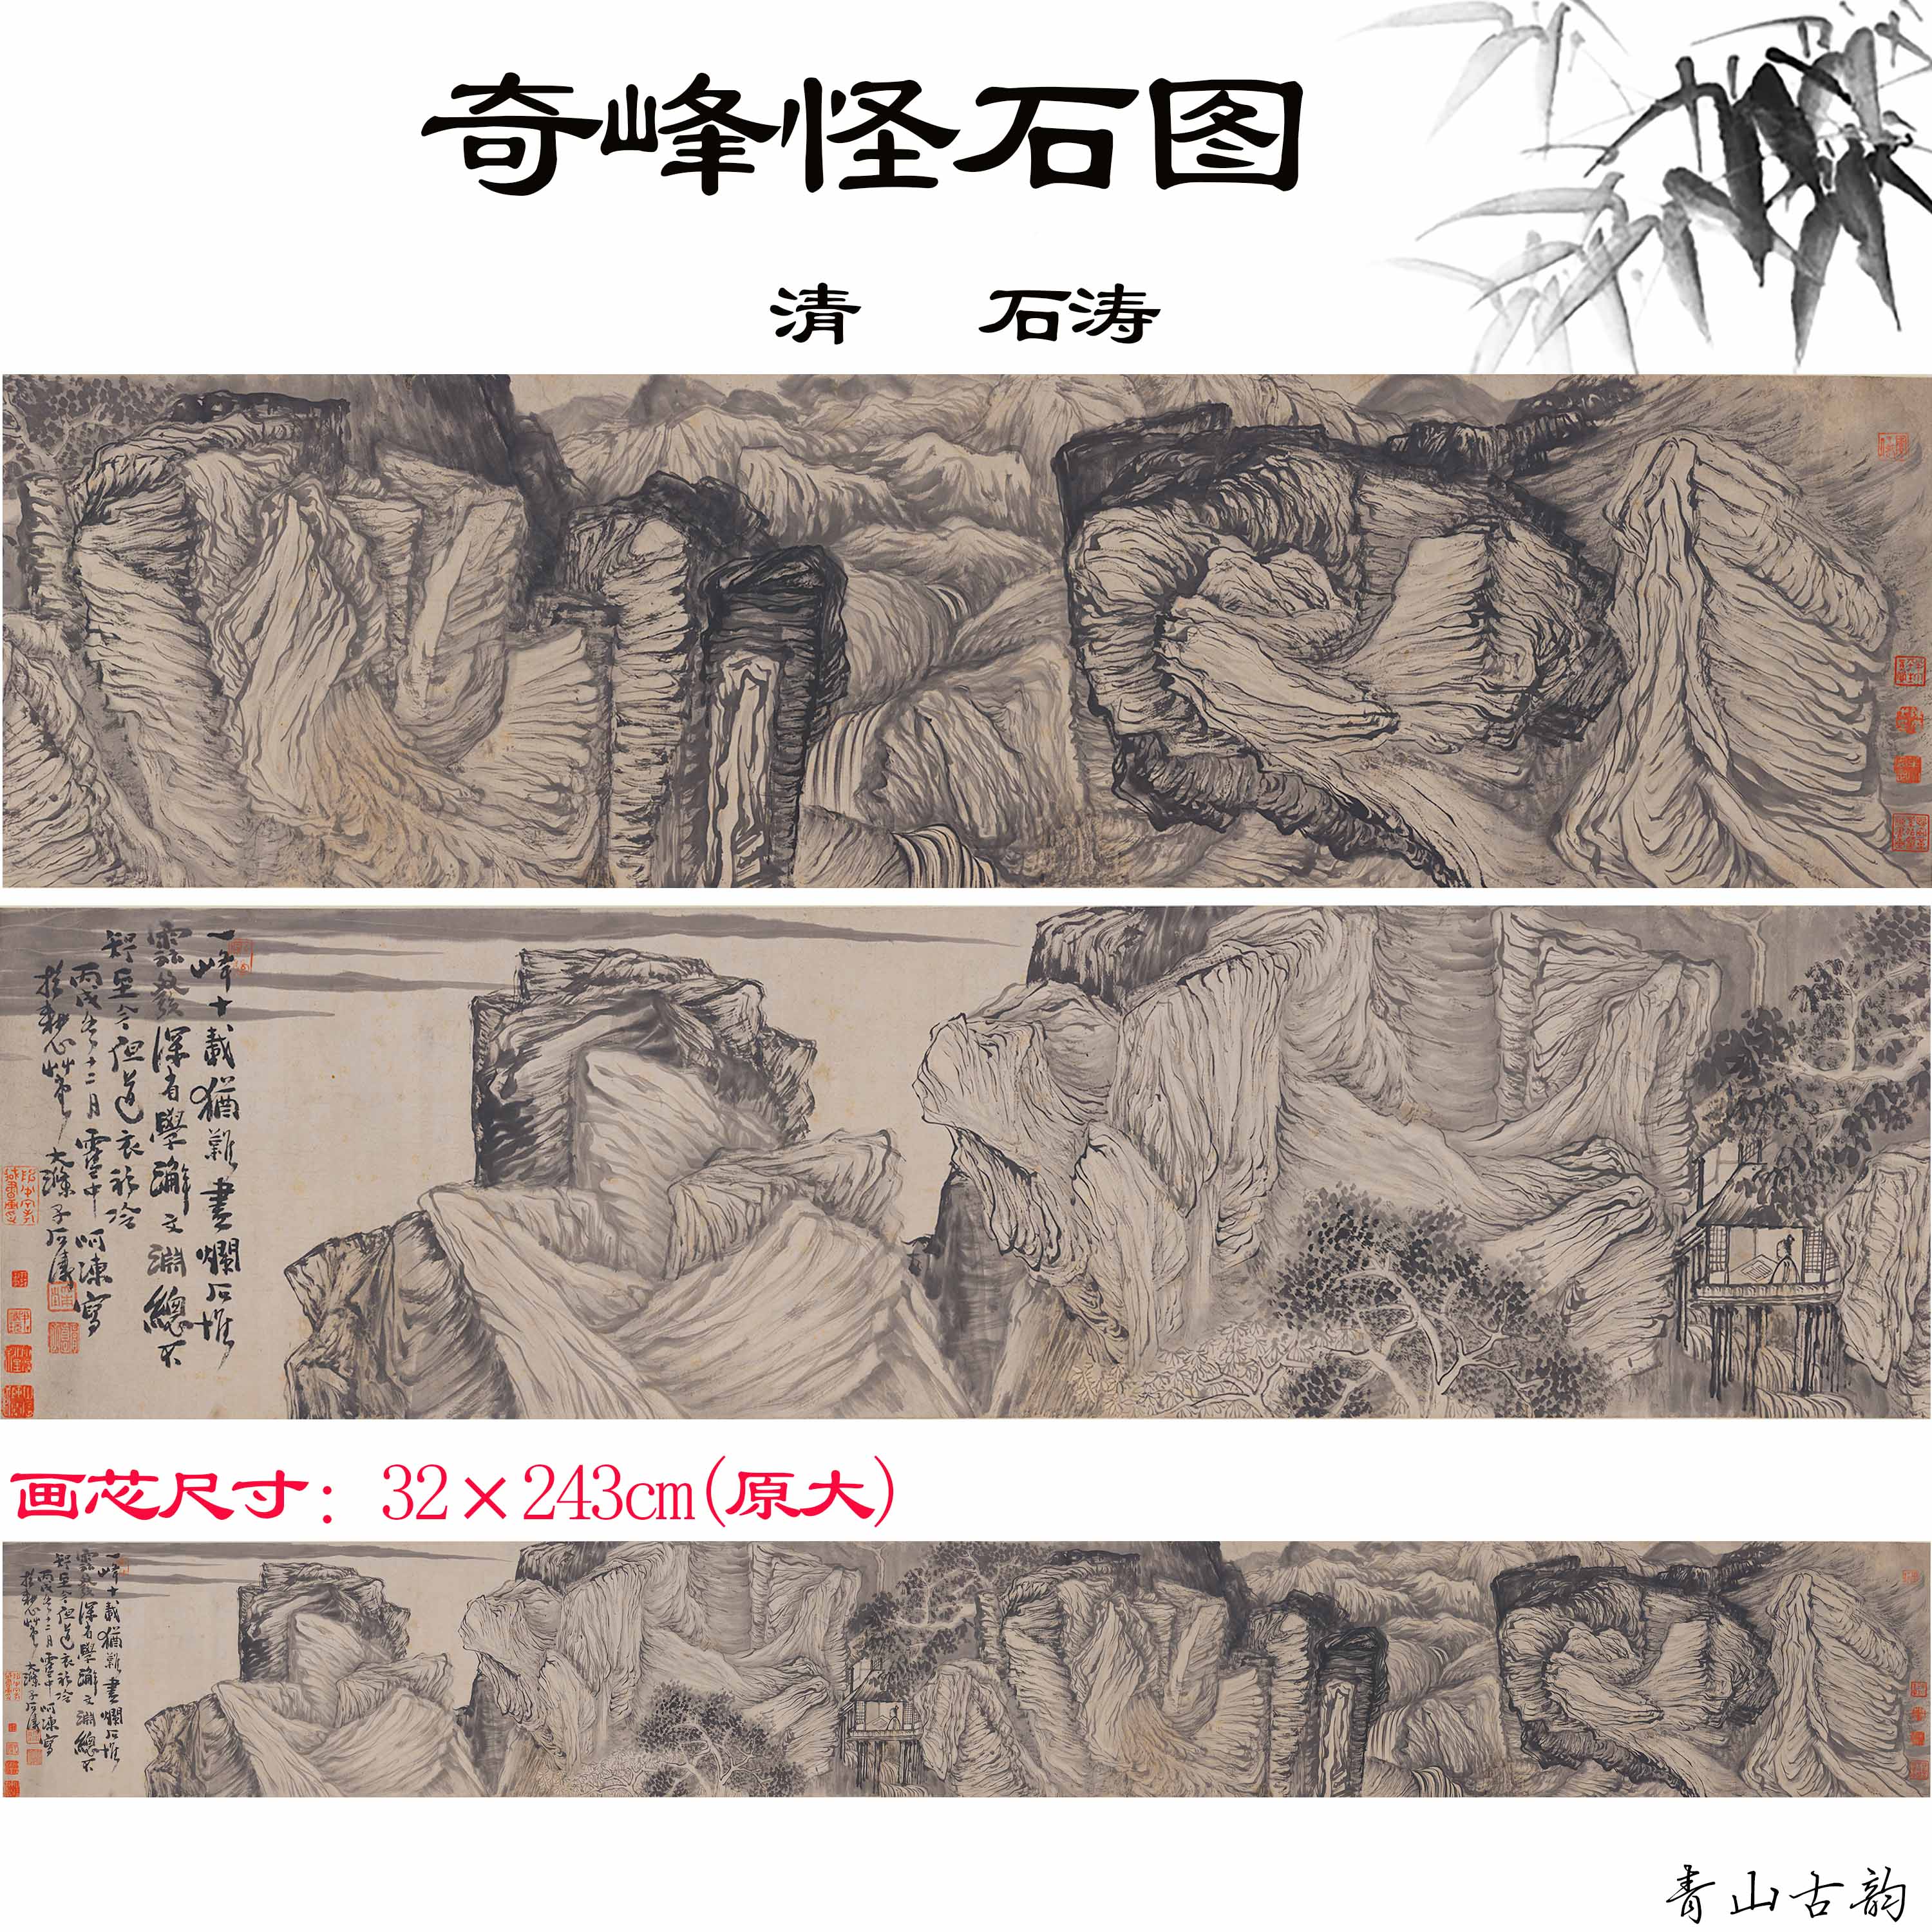 Chinese Antique Art Painting 清 石涛 奇峰怪石图 Qing Shi Tao Qi Feng Guai Shi